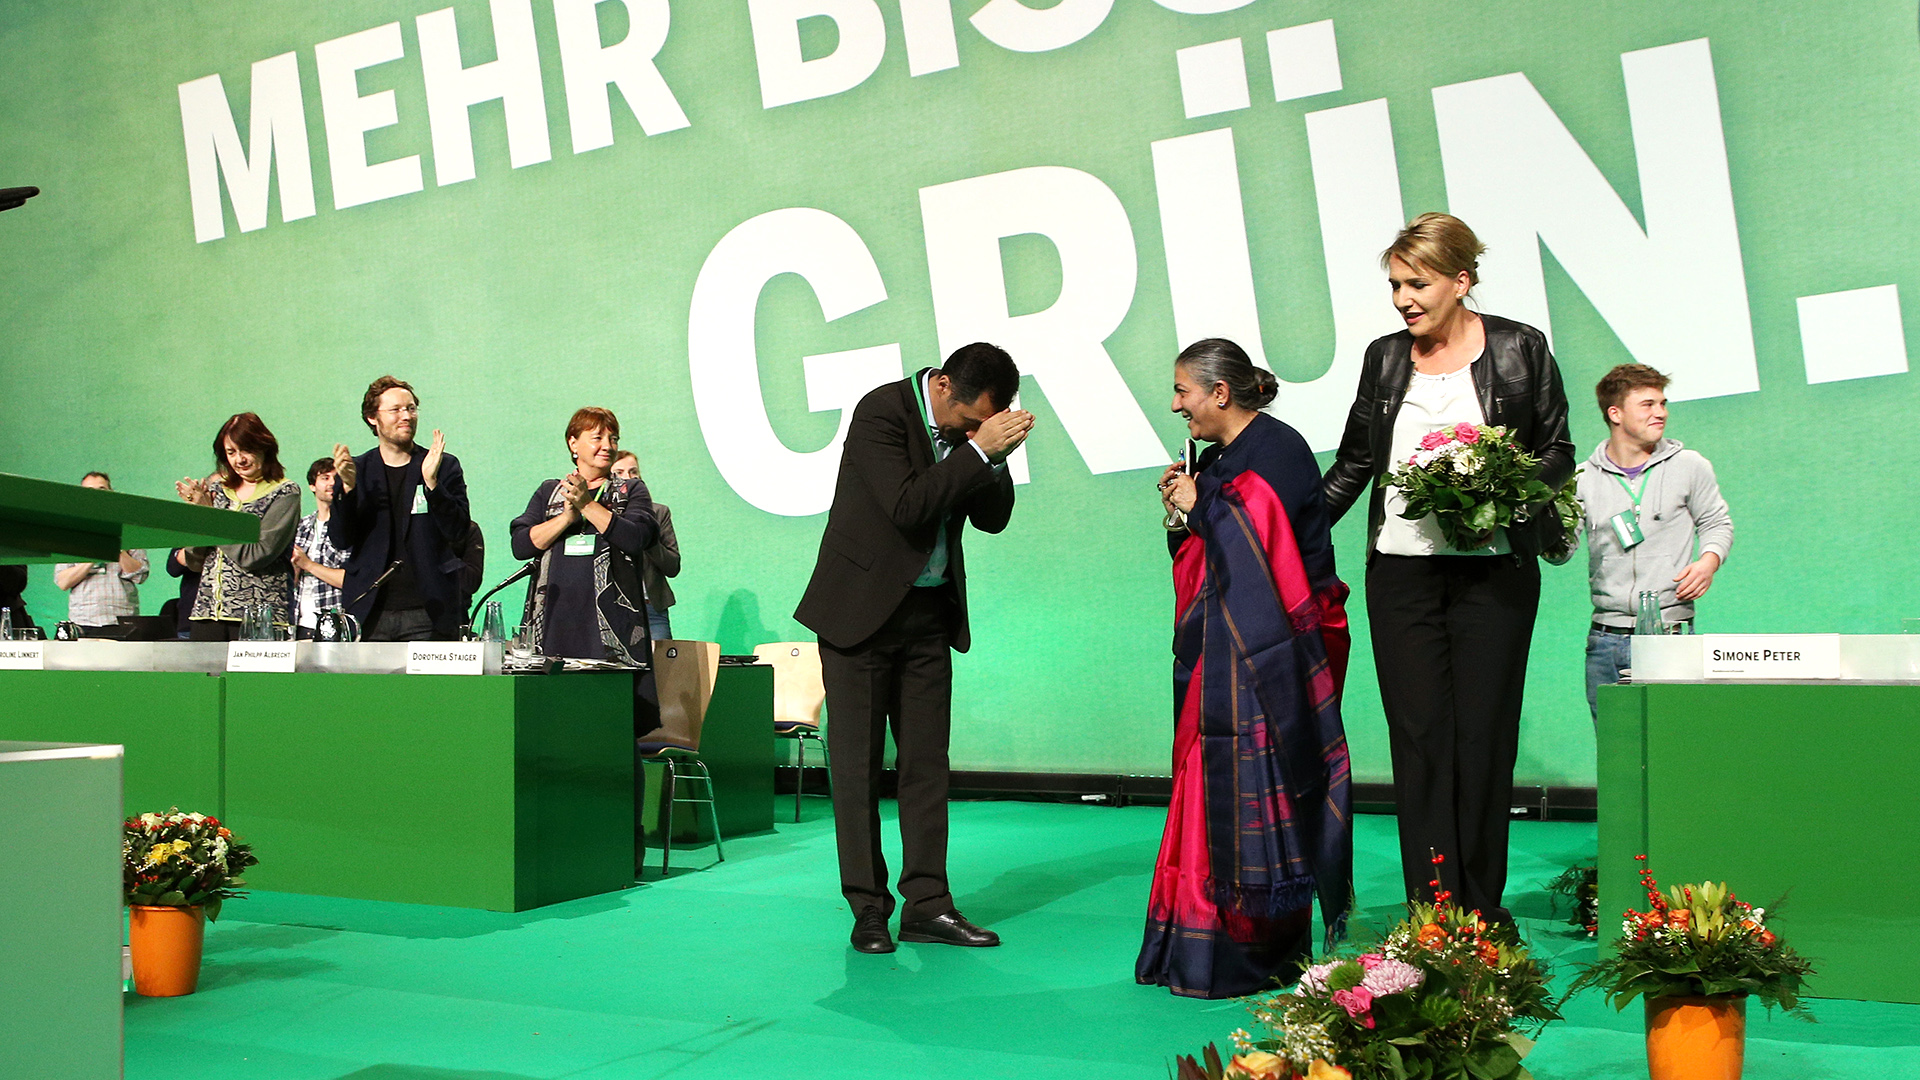  Simone Peter und Cem Özdemir bedanken sich bei Vandana Shiva (Mitte) nach ihrer Rede auf dem Bundesparteitag von Bündnis 90/Die Grünen in Hamburg. (Bild von 22.11.2014) | picture alliance / dpa